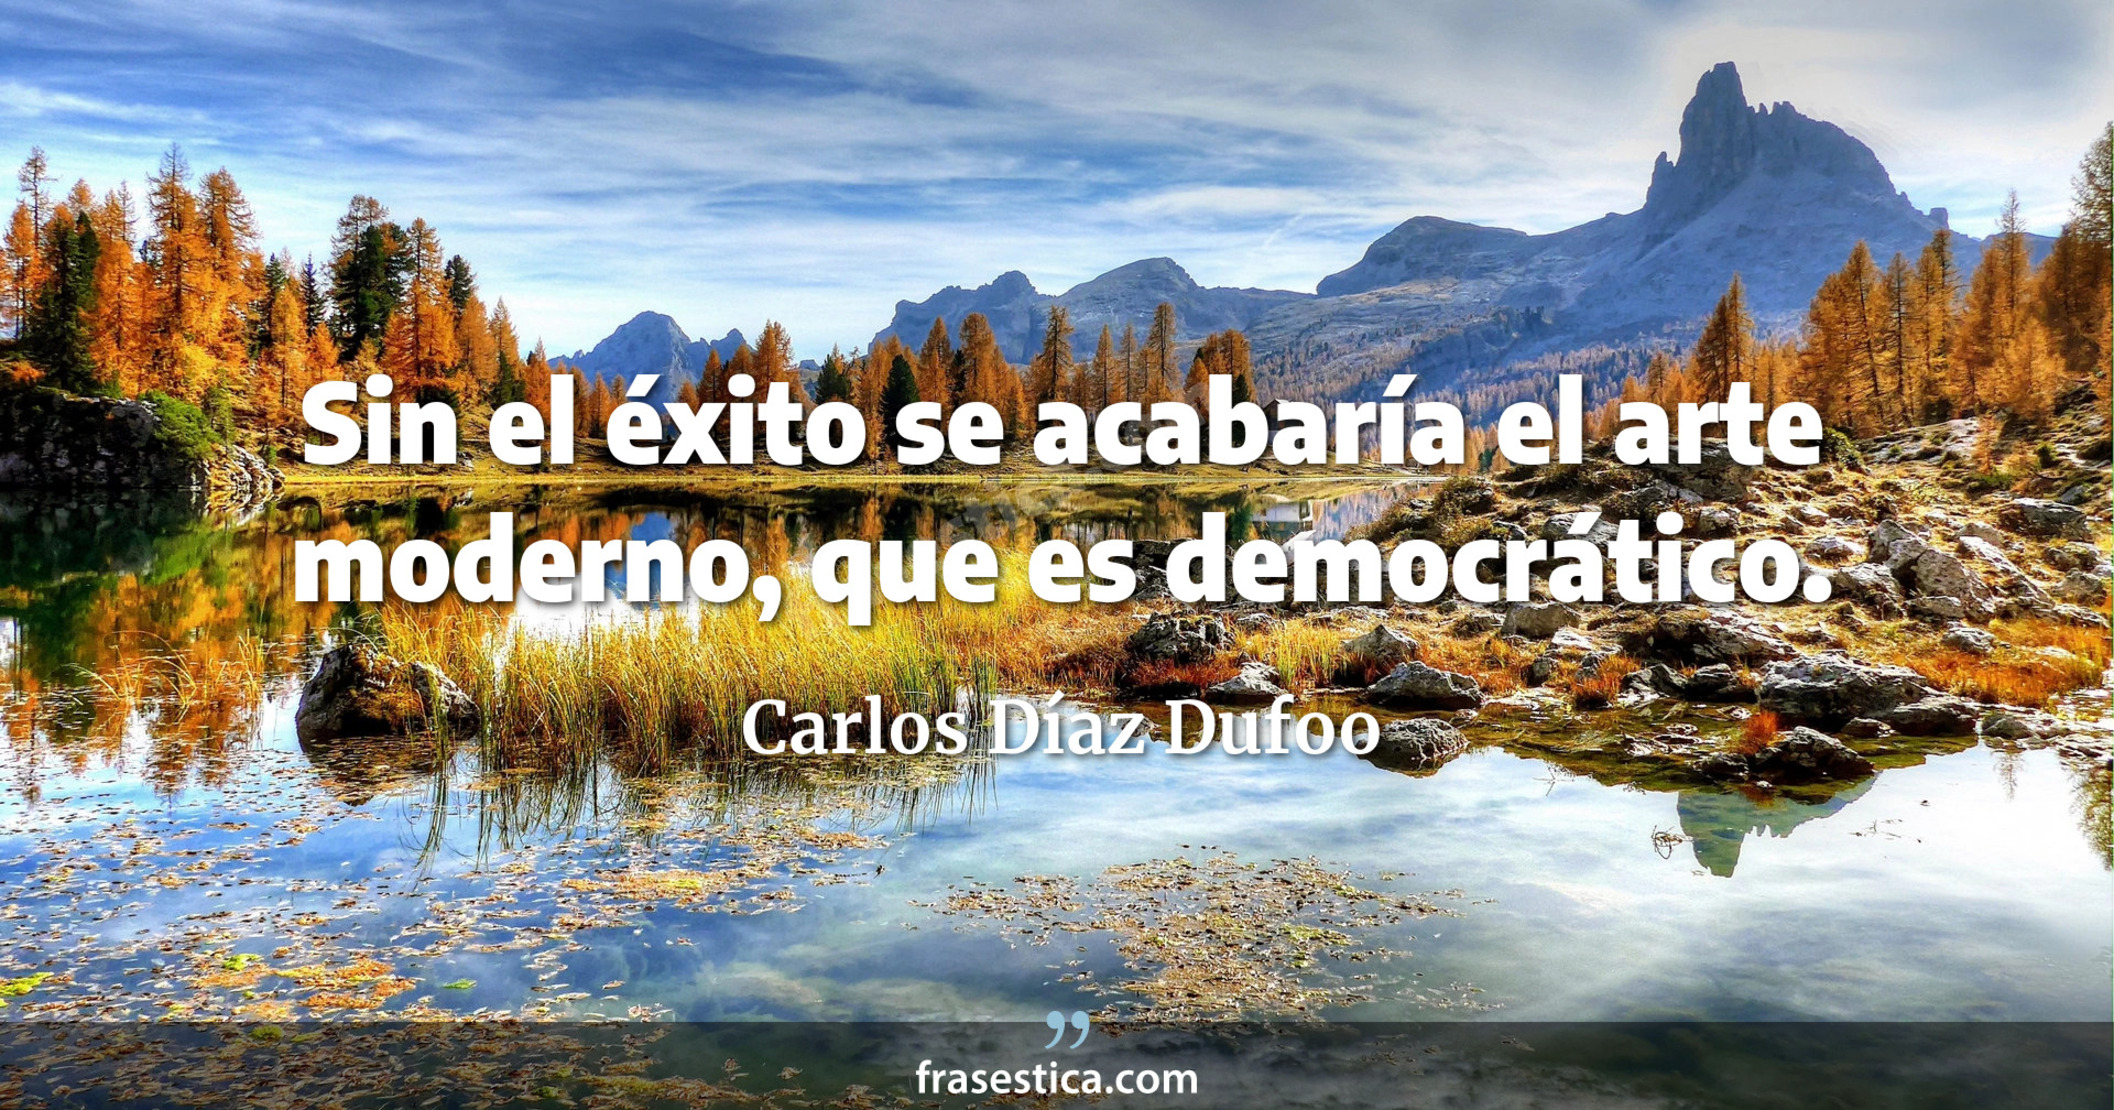 Sin el éxito se acabaría el arte moderno, que es democrático. - Carlos Díaz Dufoo